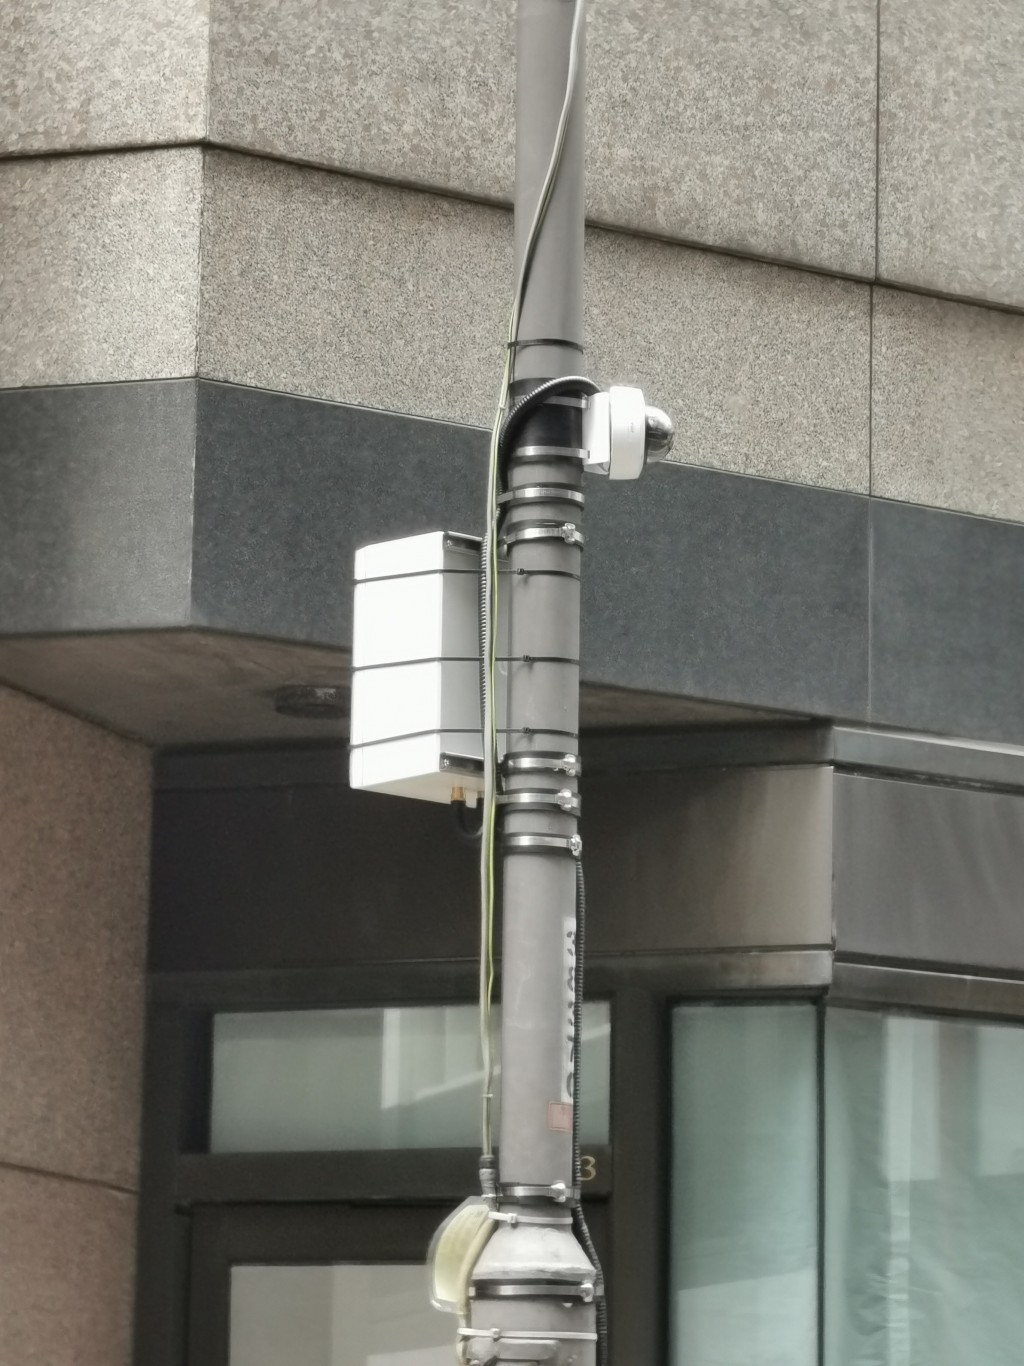 有关系统包括在相关路段合适灯柱上，安装监察交通情况的闭路电视摄影机和相关的设备。